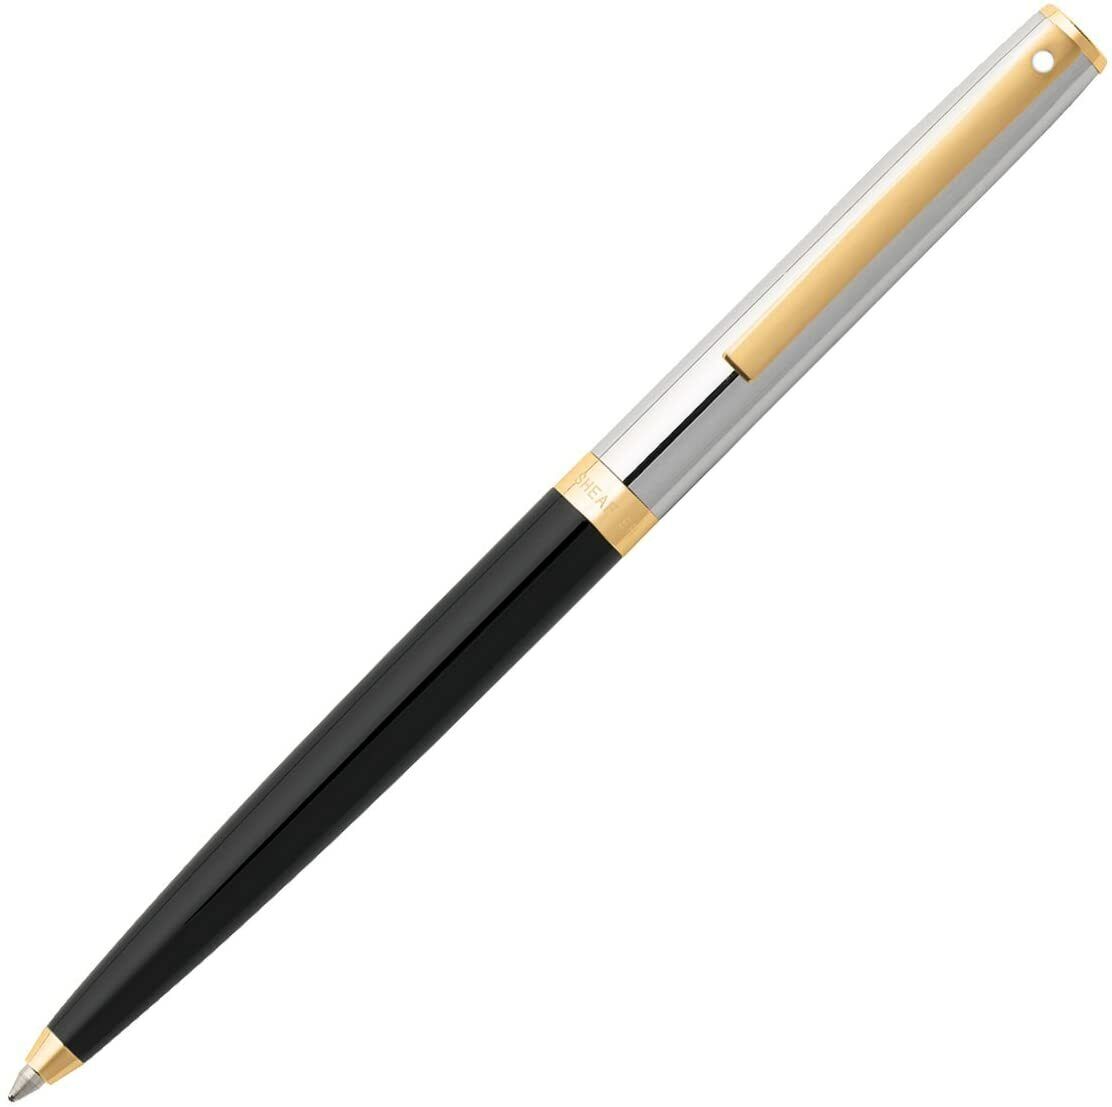 Sheaffer Sagaris Ballpoint Pen, Black, Chrome & Gold, New In Box